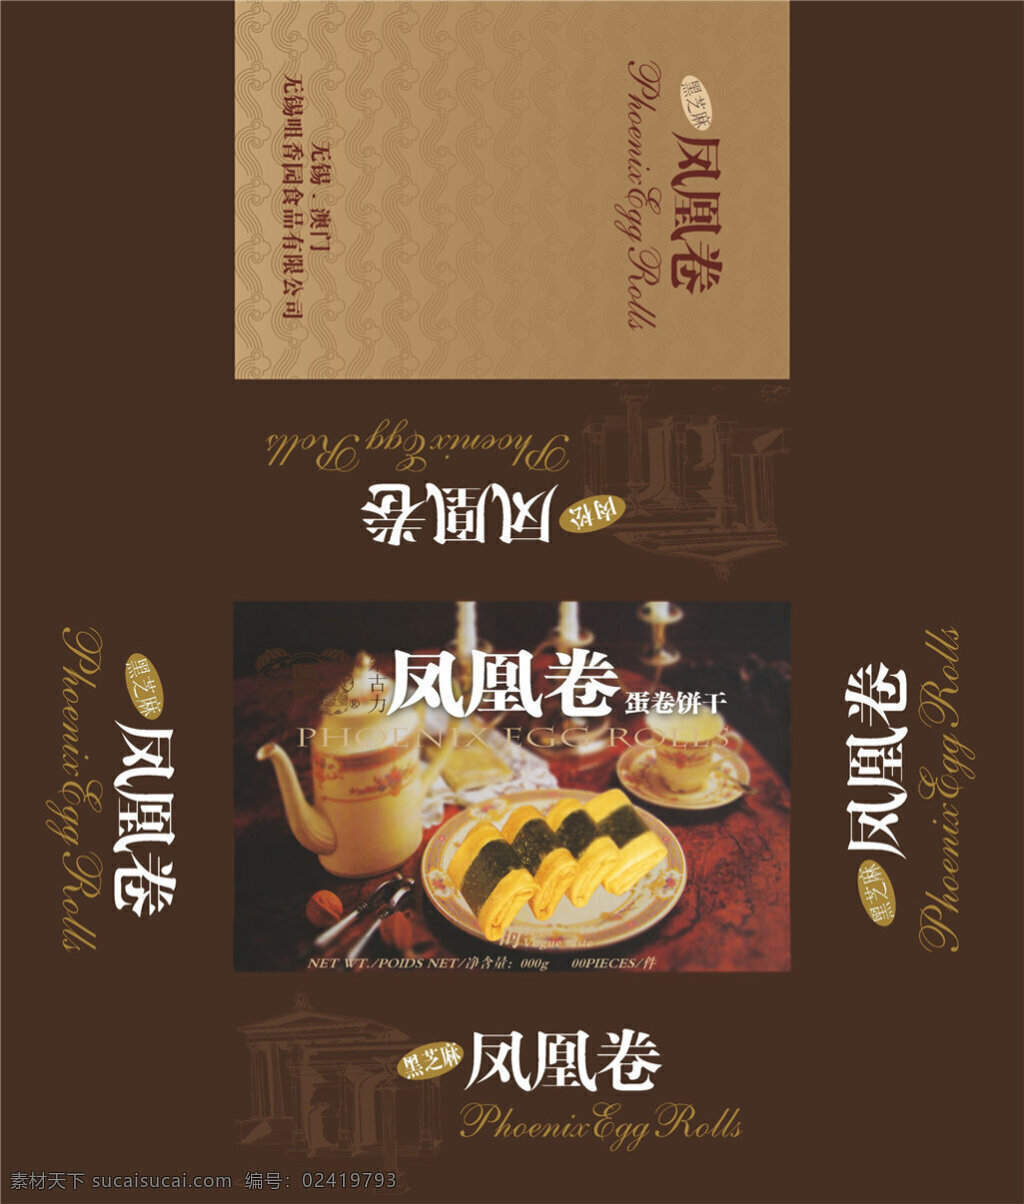 食品 包装盒 平面 包装设计 包装 包装设计模板 psd素材 包装模板 分层 黑色